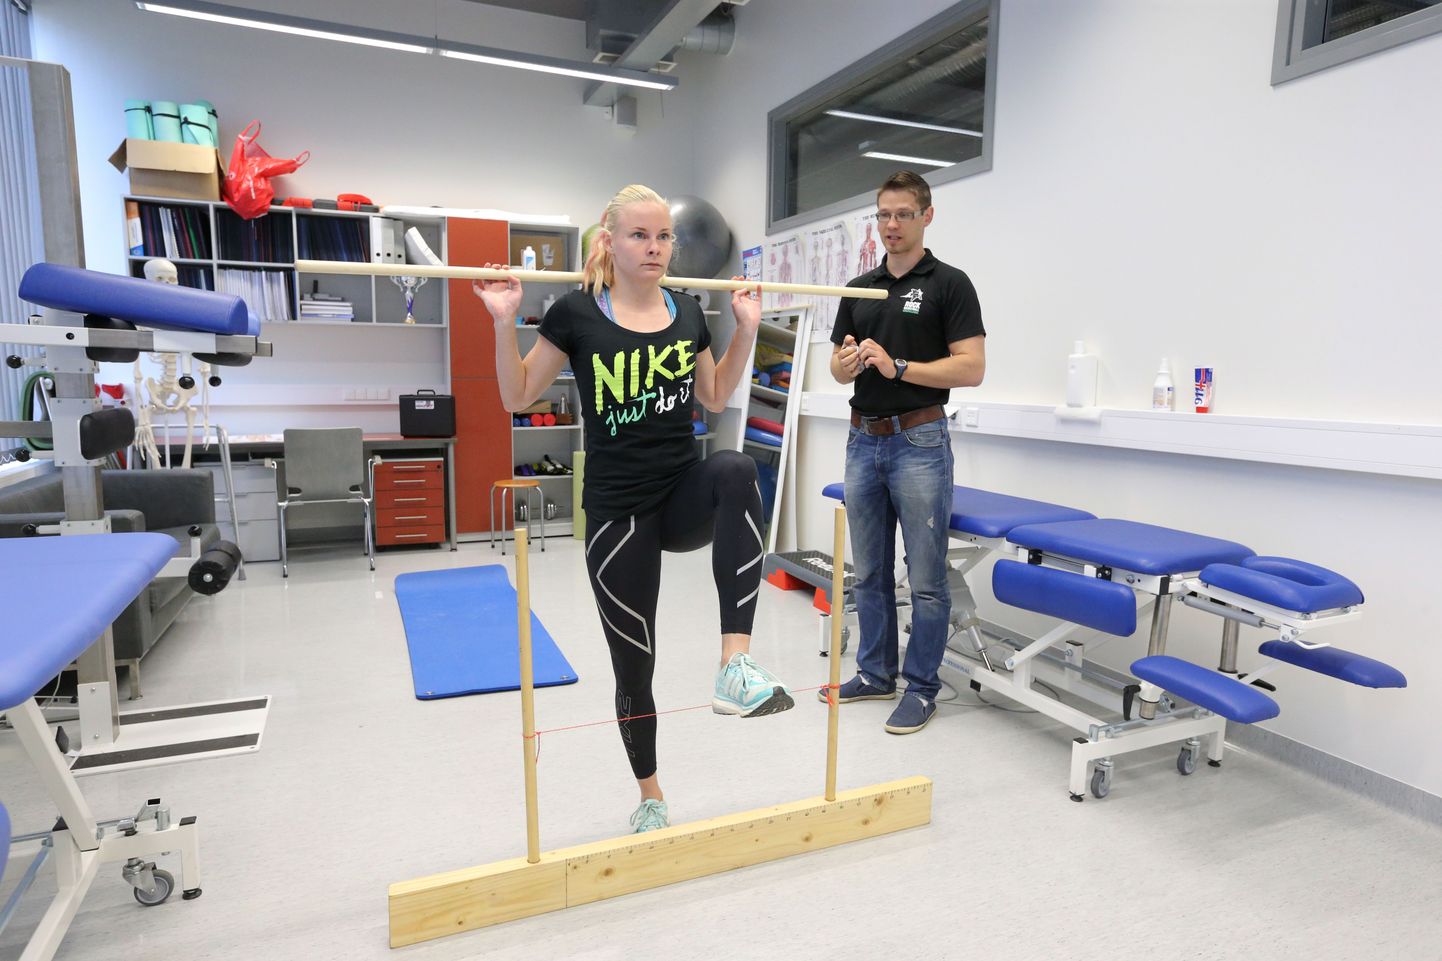 Tartu Ülikoolis hakatakse õpetama liikumisnõustamist. Pildil on füsioteraapia tudeng Maarja Kalev ja  doktorant Mati Arend.
ma/Foto MARGUS ANSU POSTIMEES